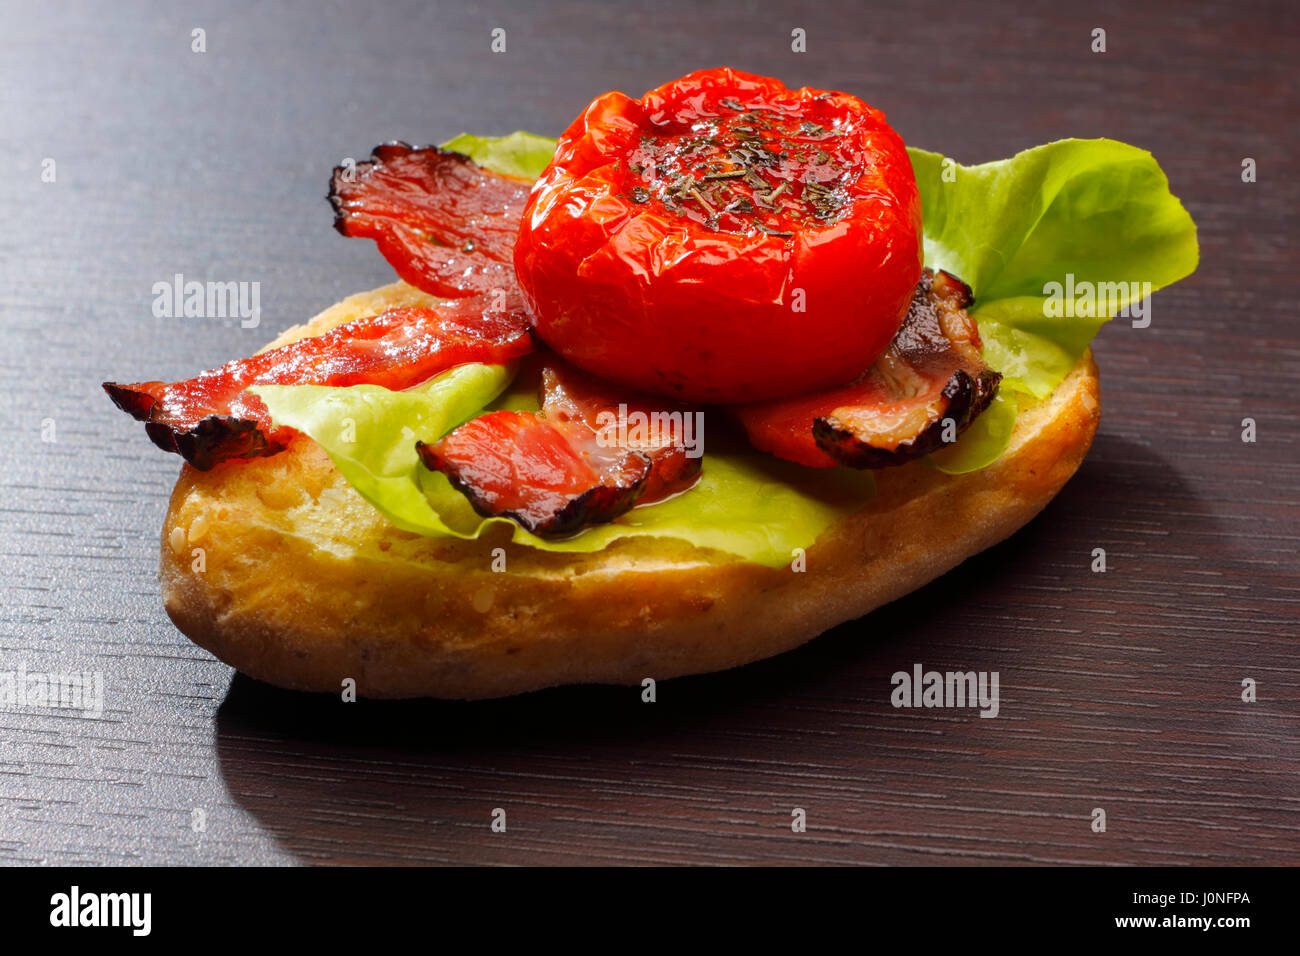 Ein halbes Brötchen mit gebratenem Speck, halbierte Tomaten und Salat Stockfoto